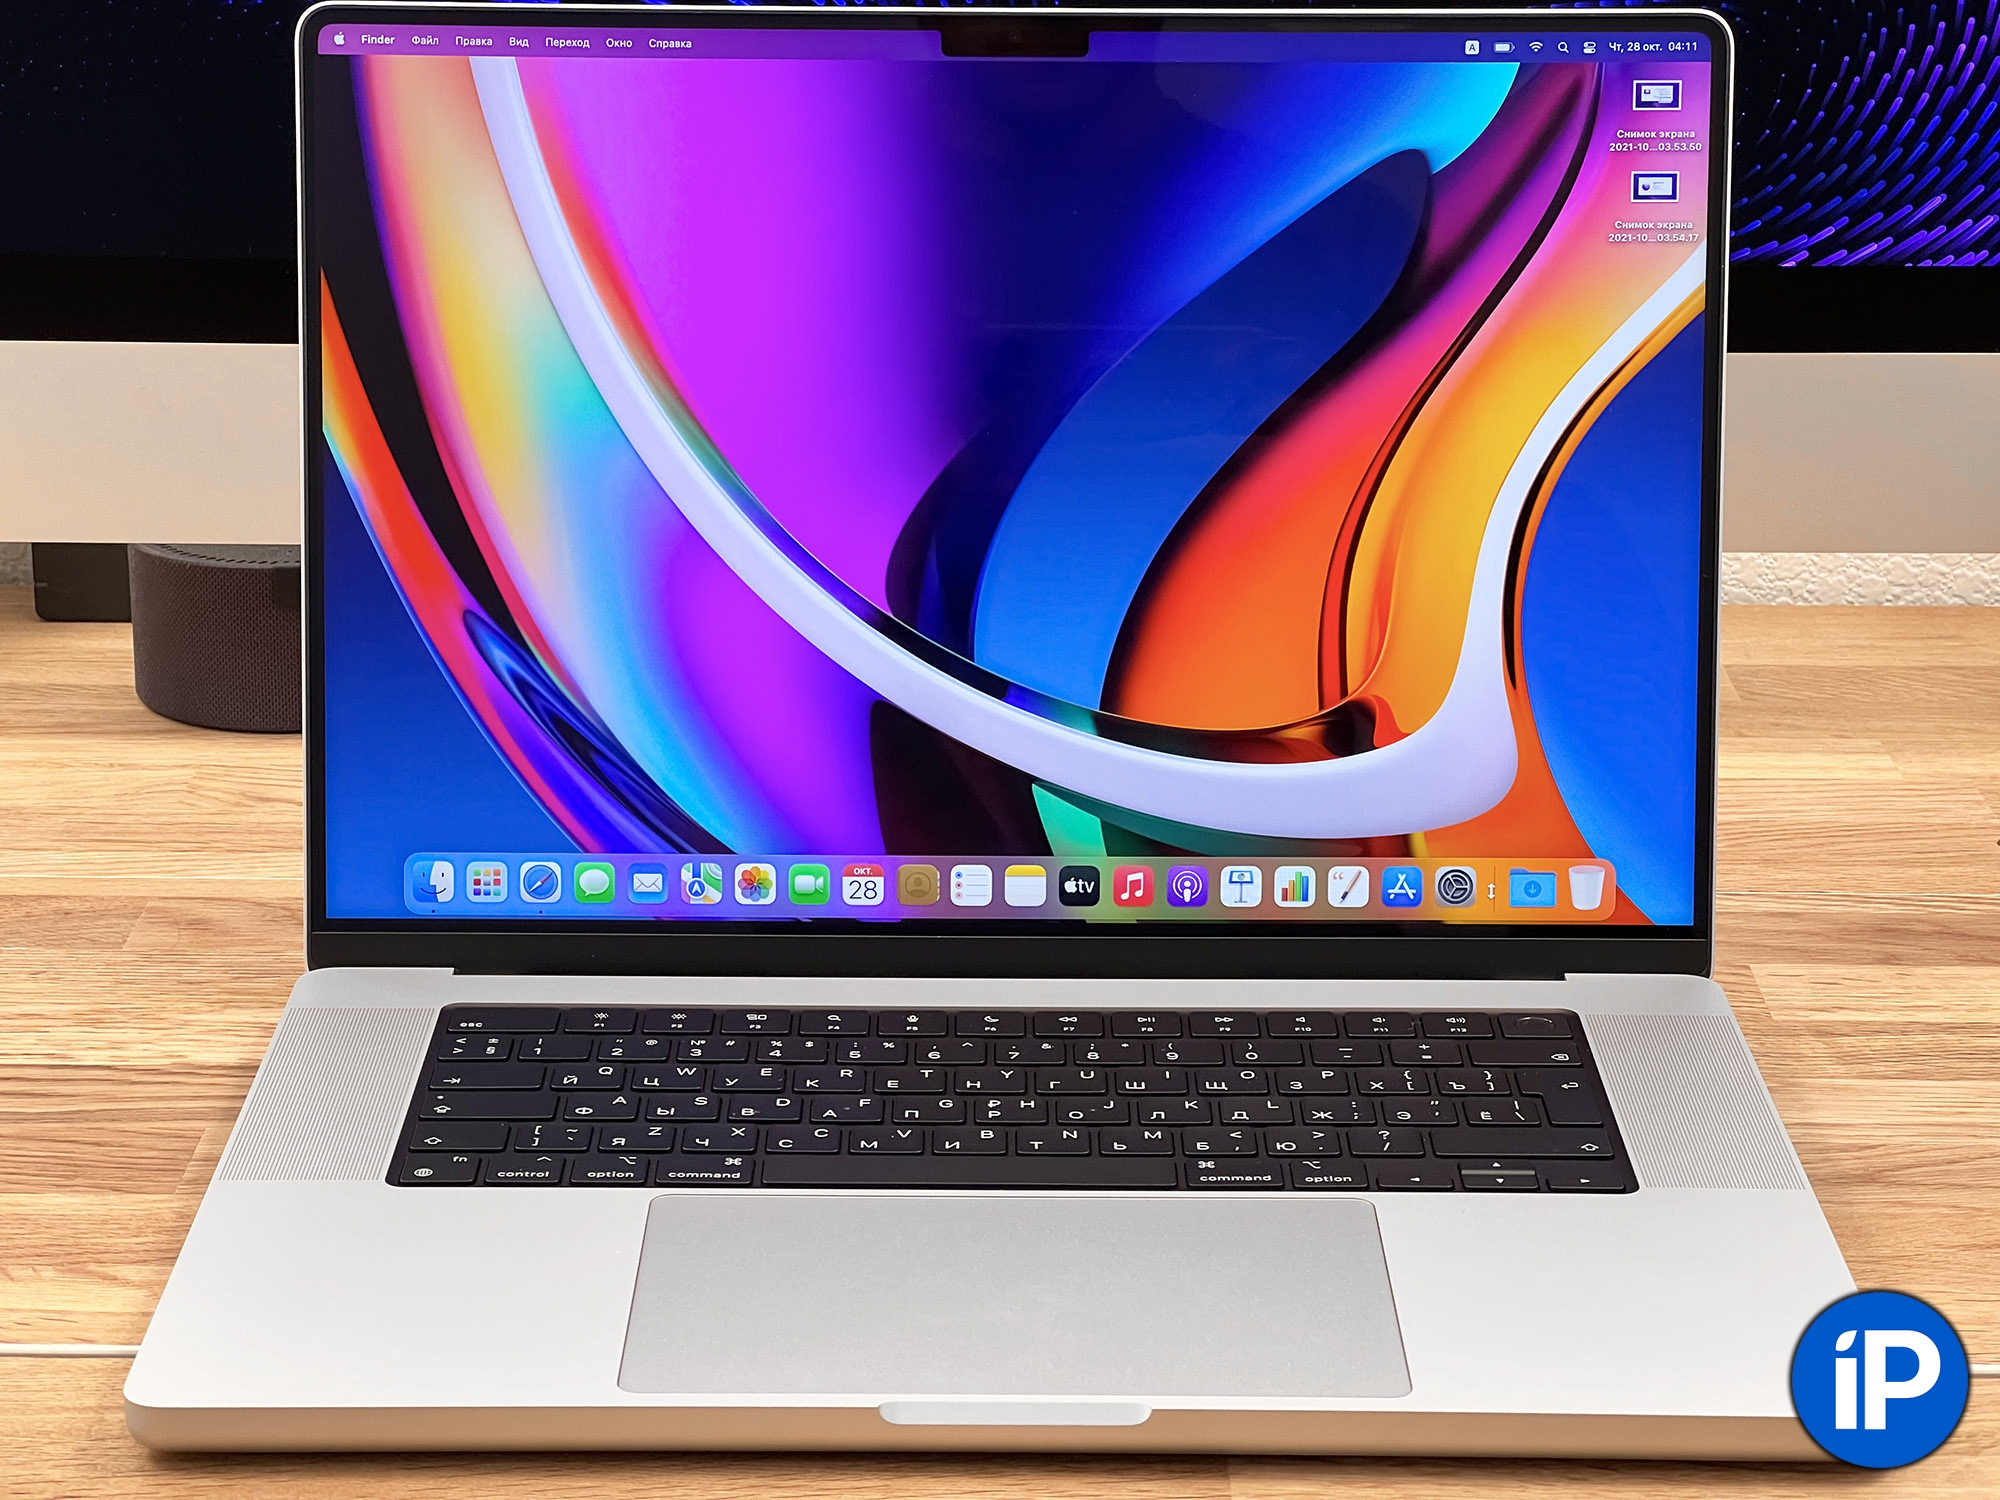 Распаковка и впечатления от MacBook Pro 2021 года с процессорами M1 Pro и M1 Max. Дополняем весь день